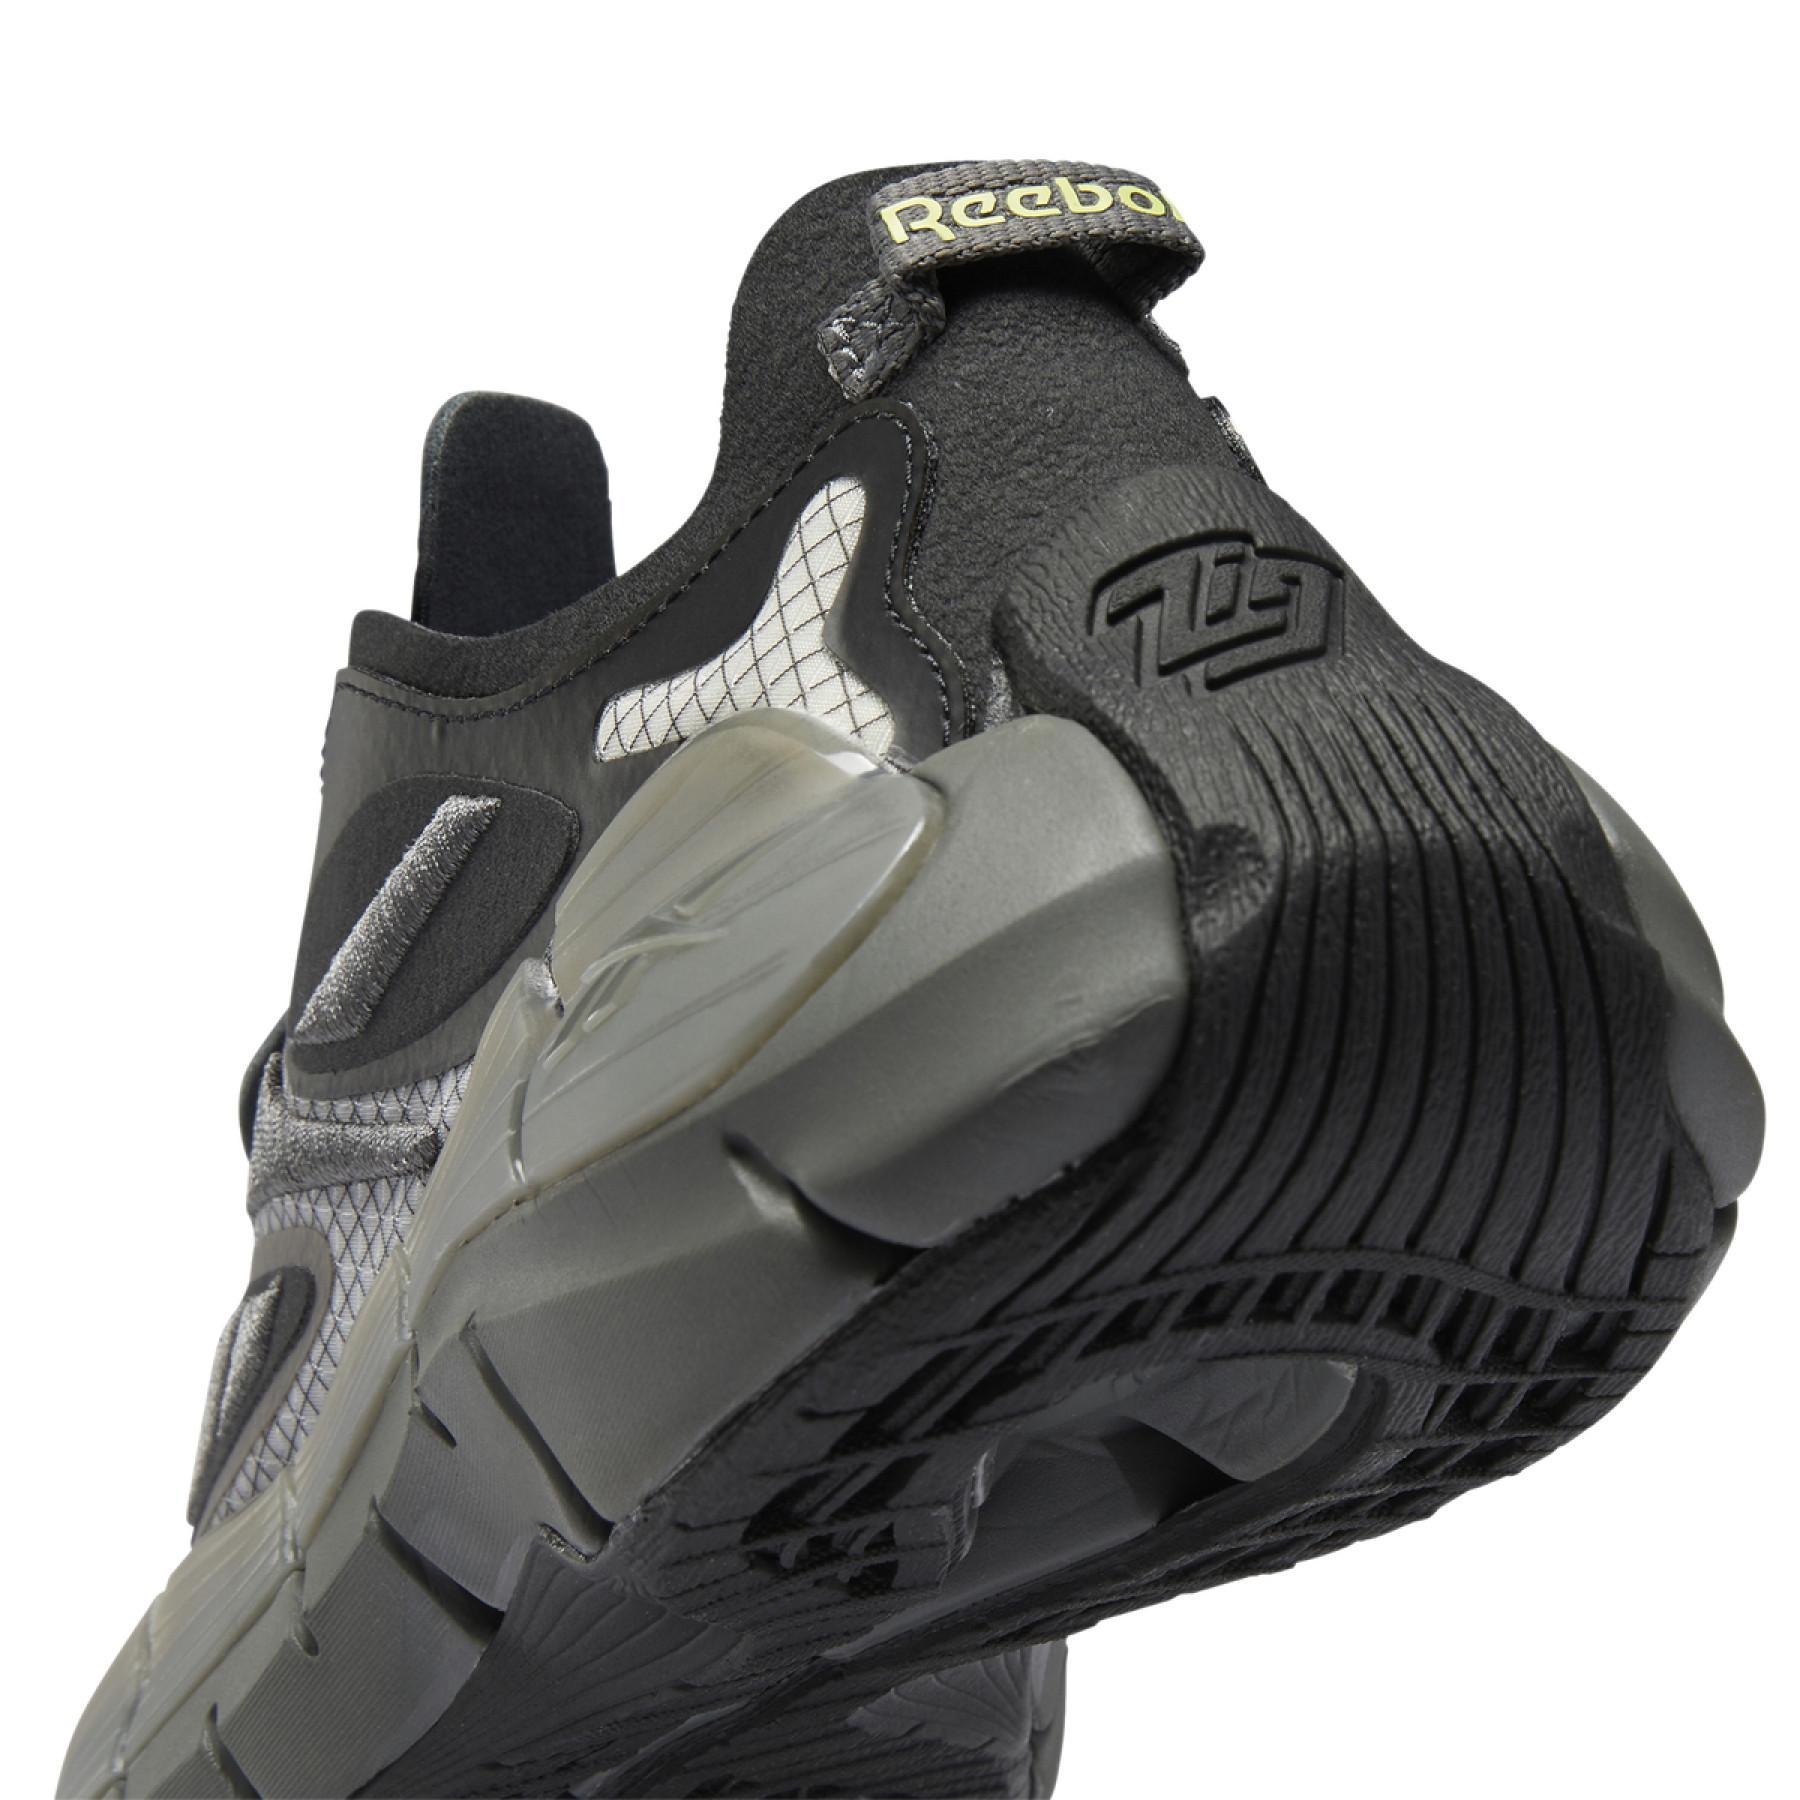 Sneakers Reebok Zig Kinetica II Concept 1